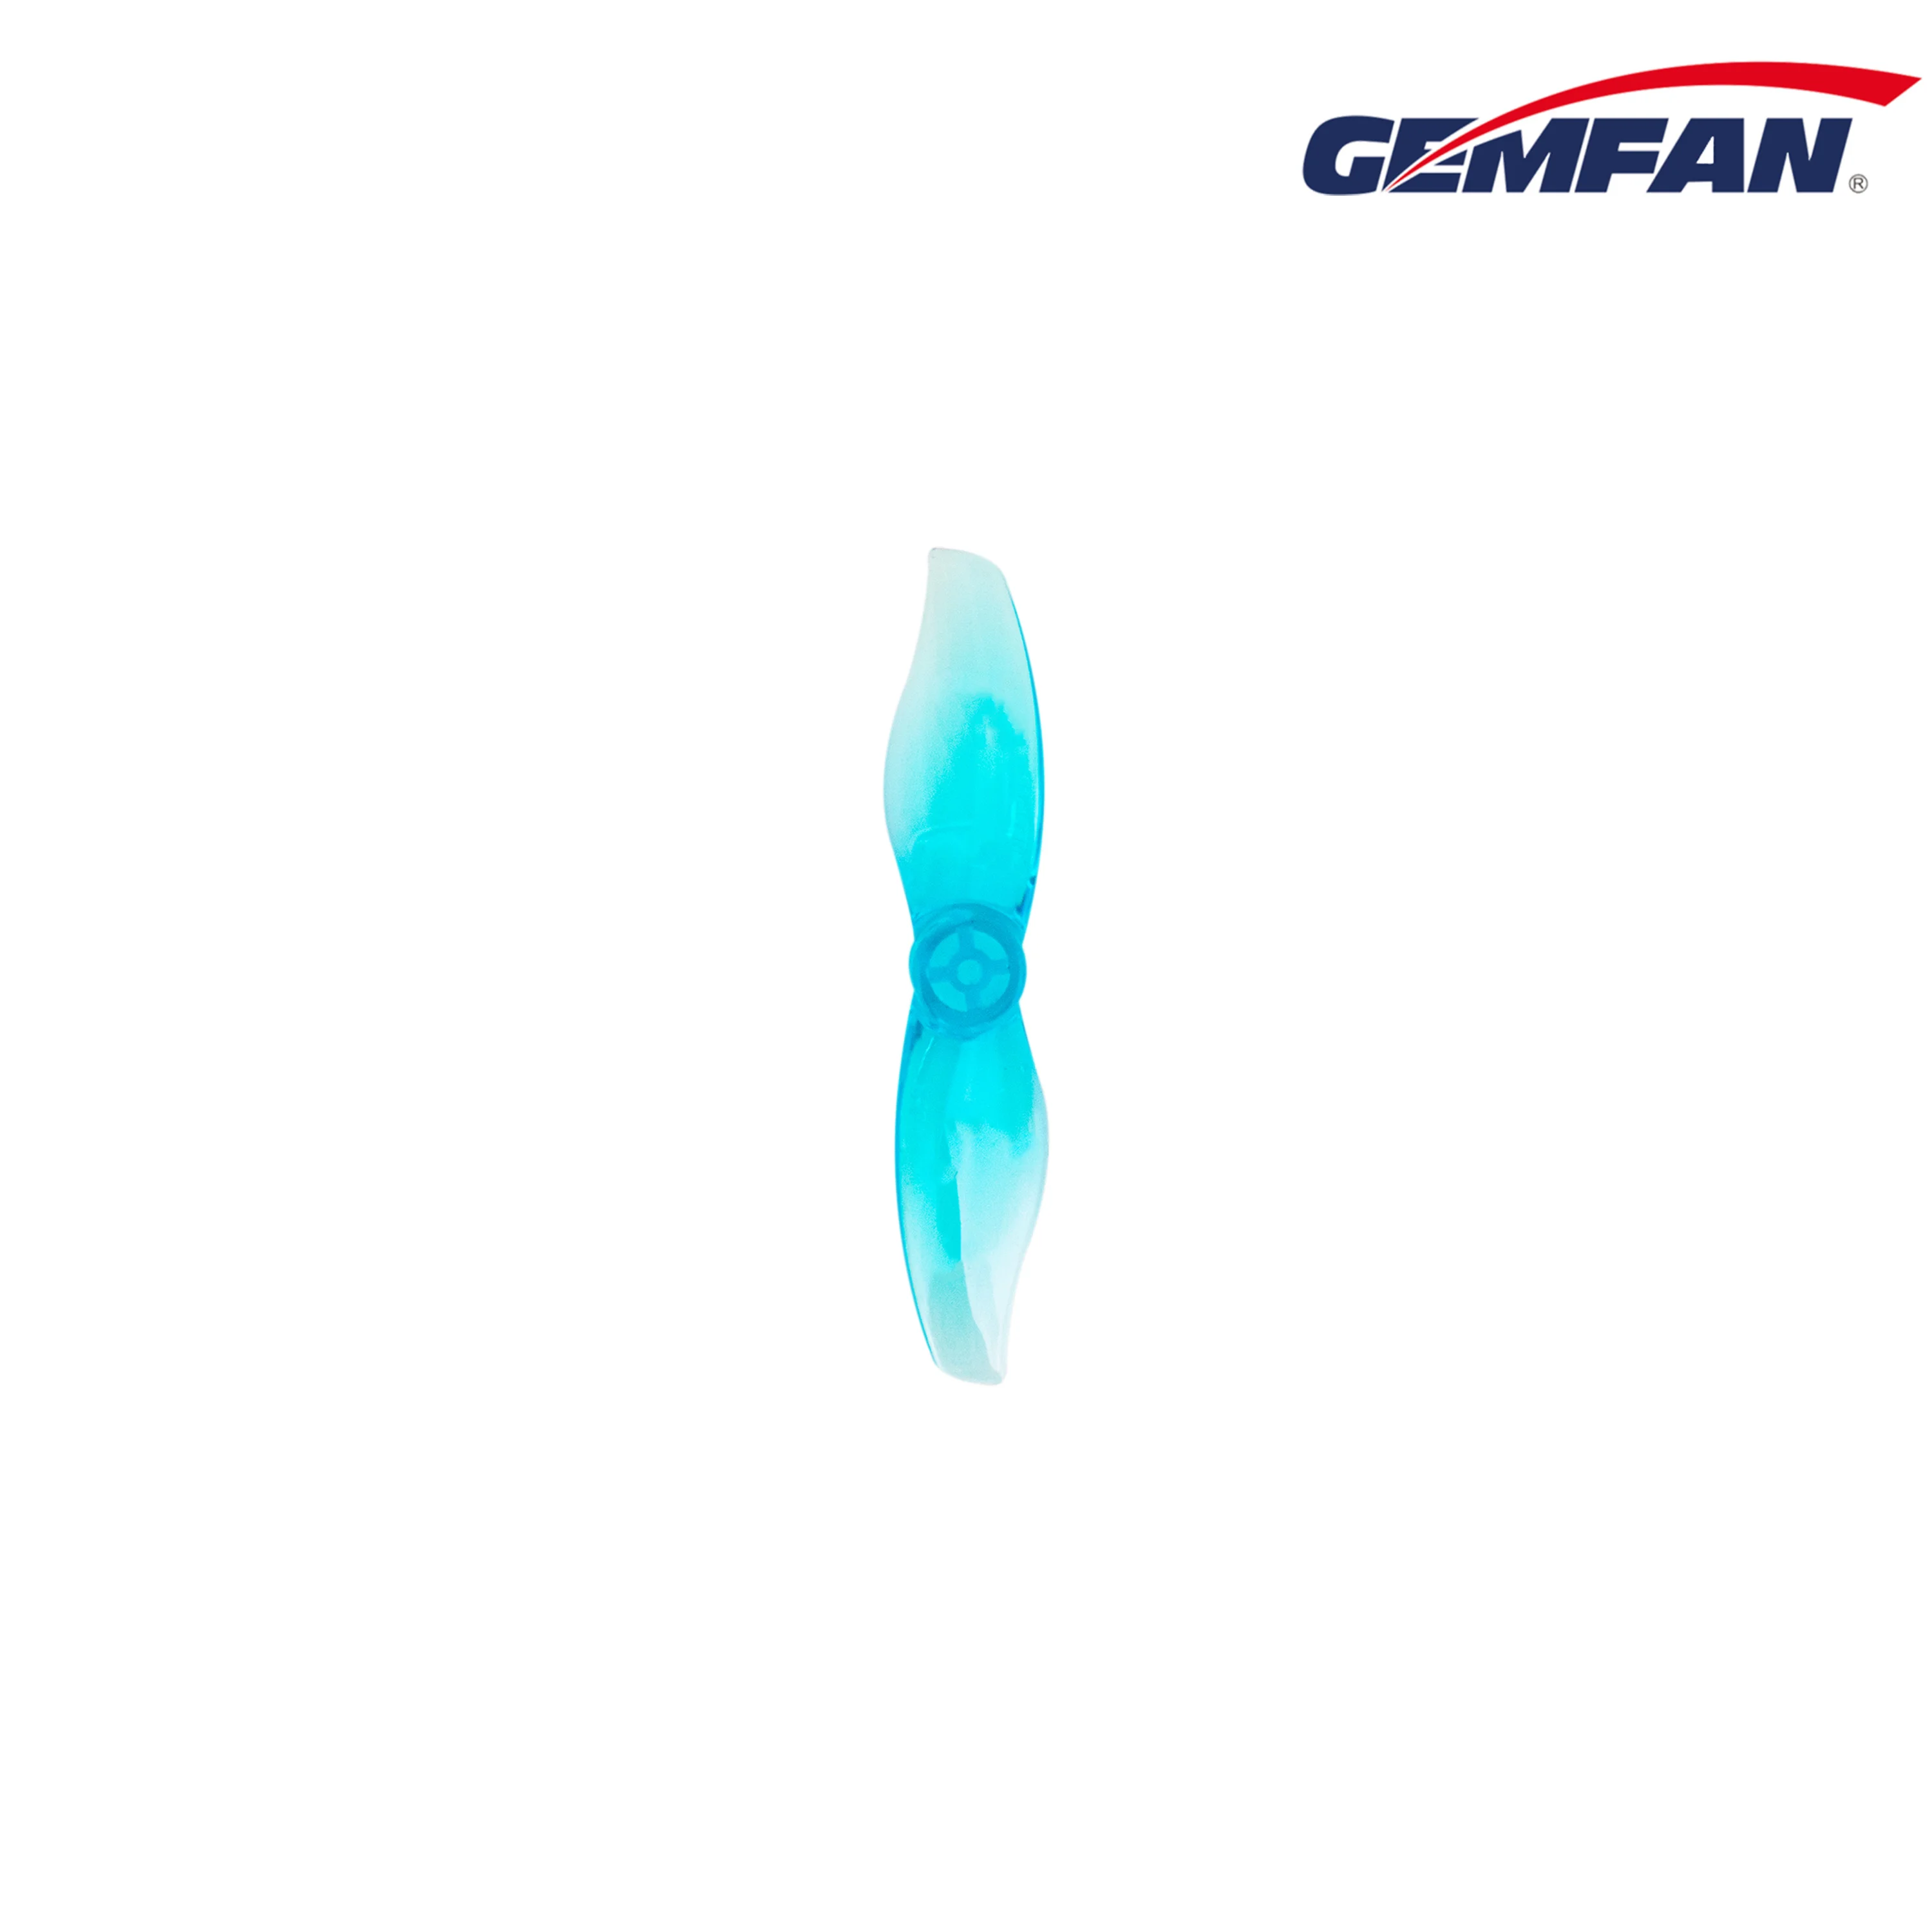 Gemfan Hurricane 2015 2x1.5 2-blade PC Blue 1.5mm propeller